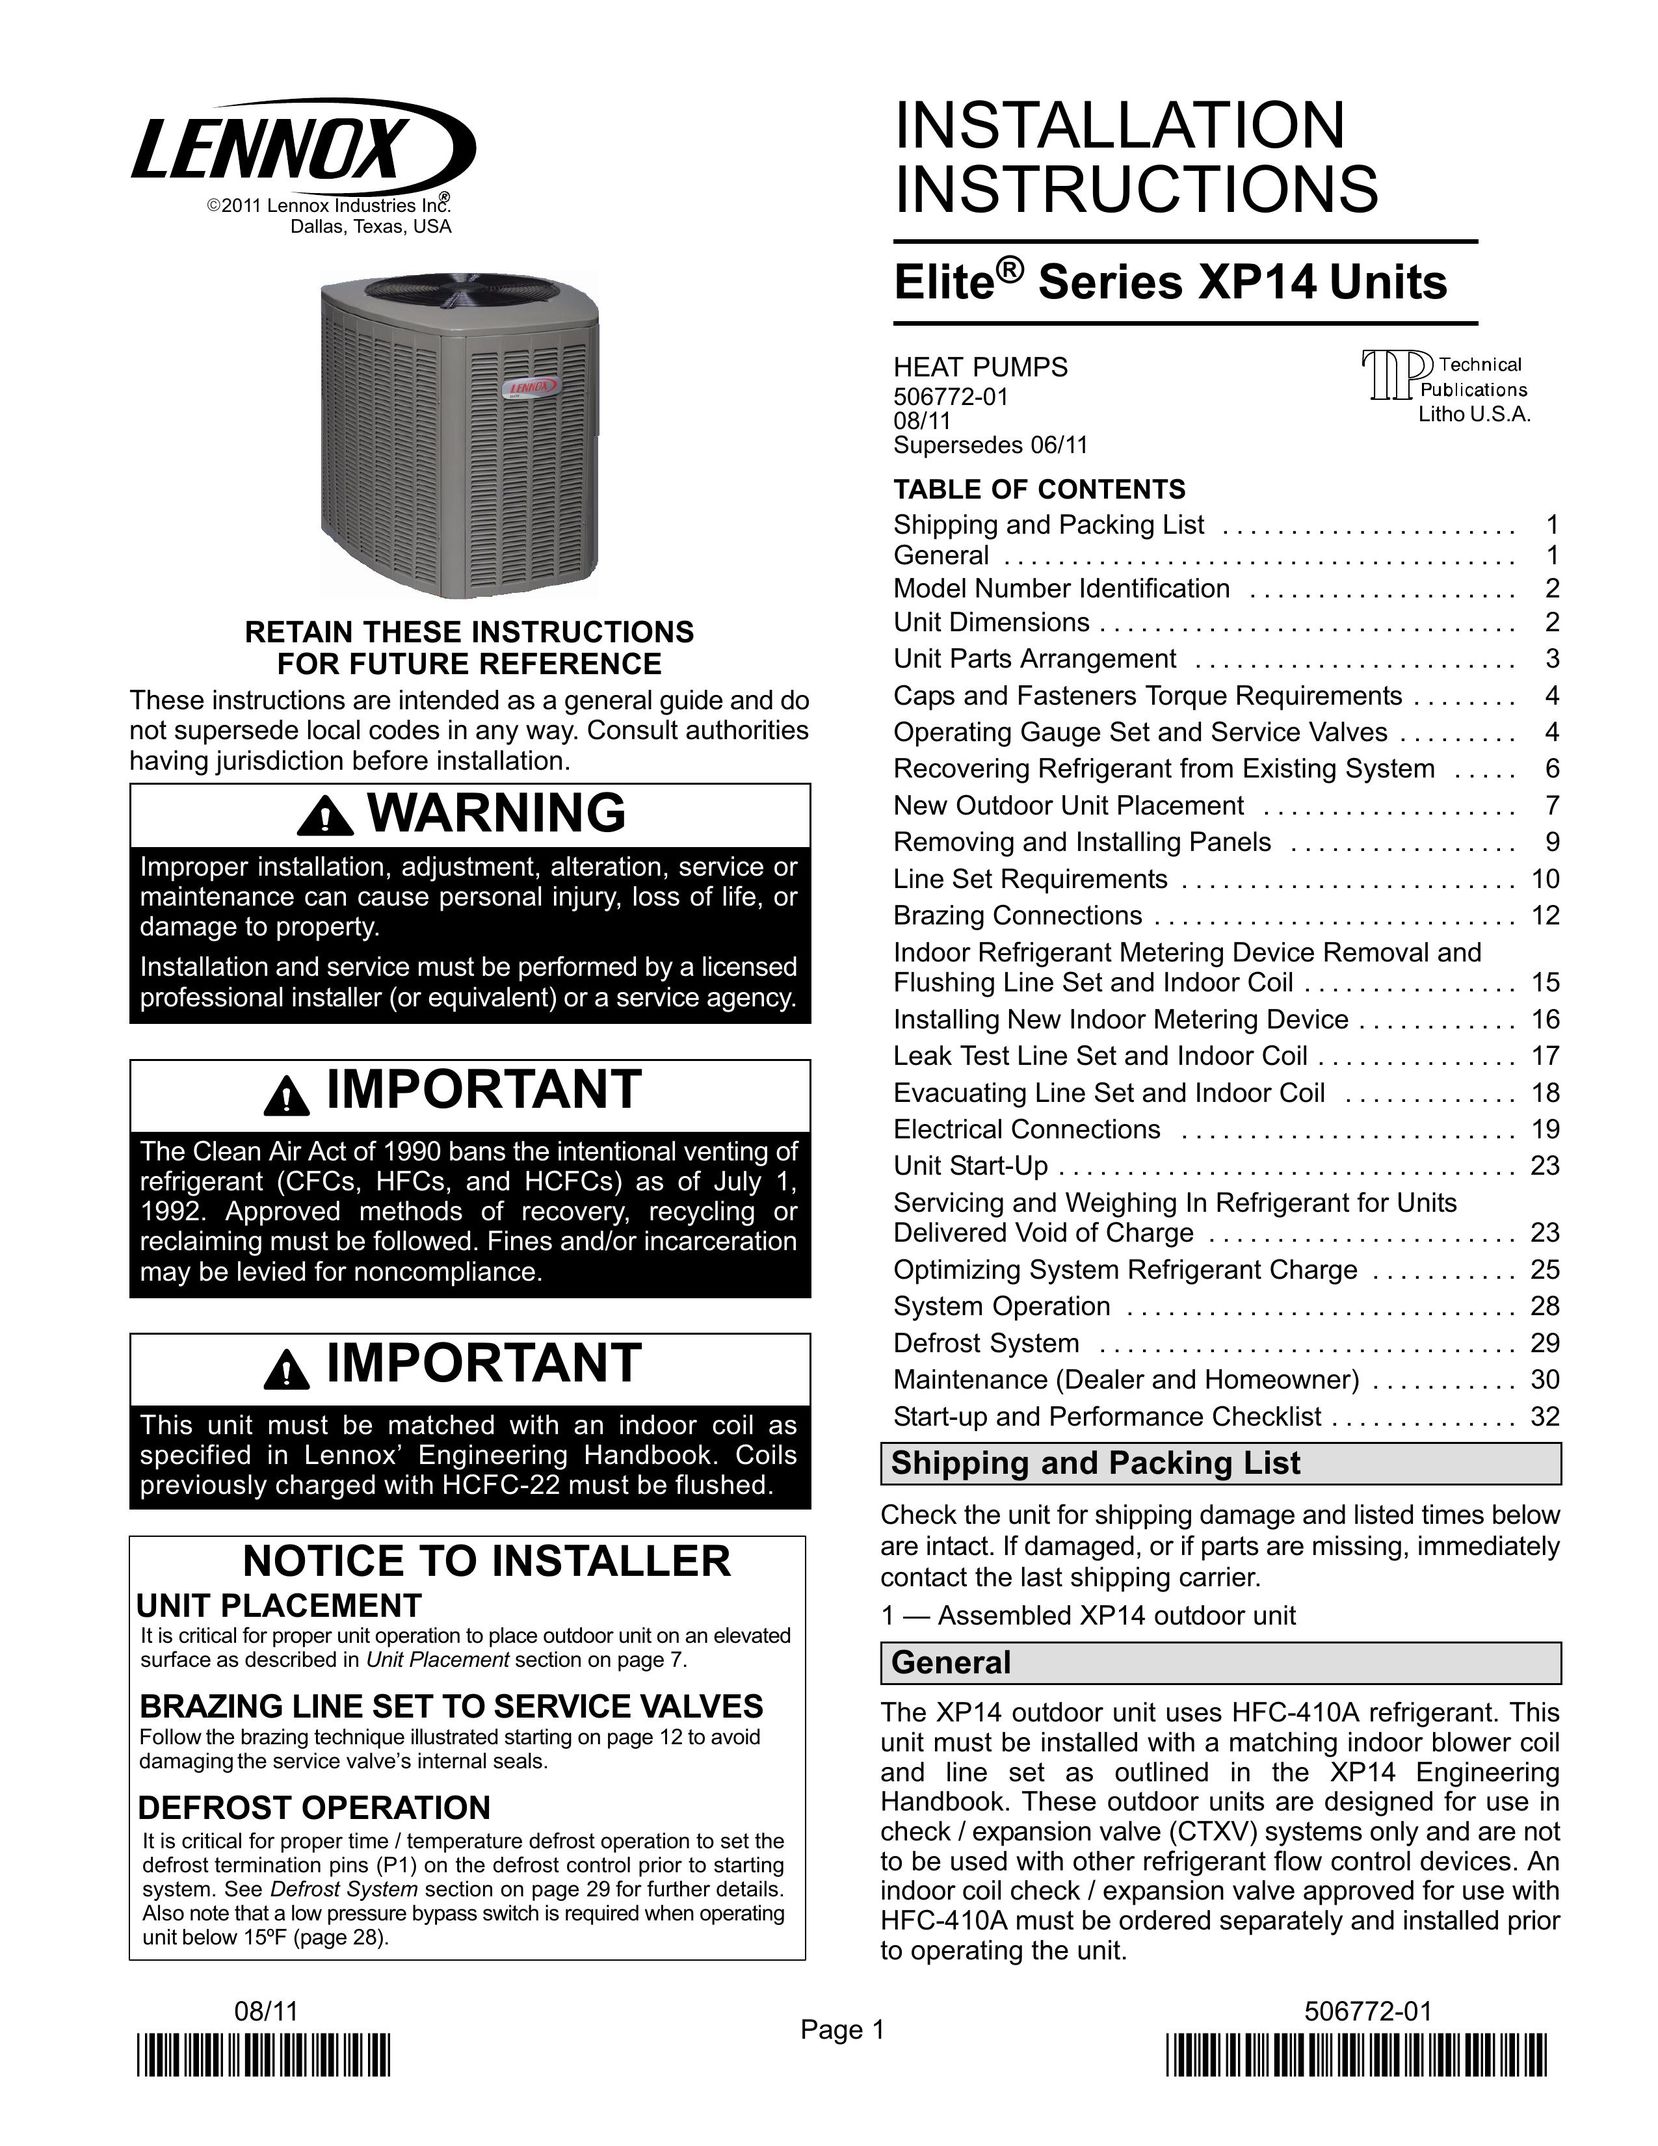 Lenox Elite Series XP14 Units HEAT PUMPS Heat Pump User Manual